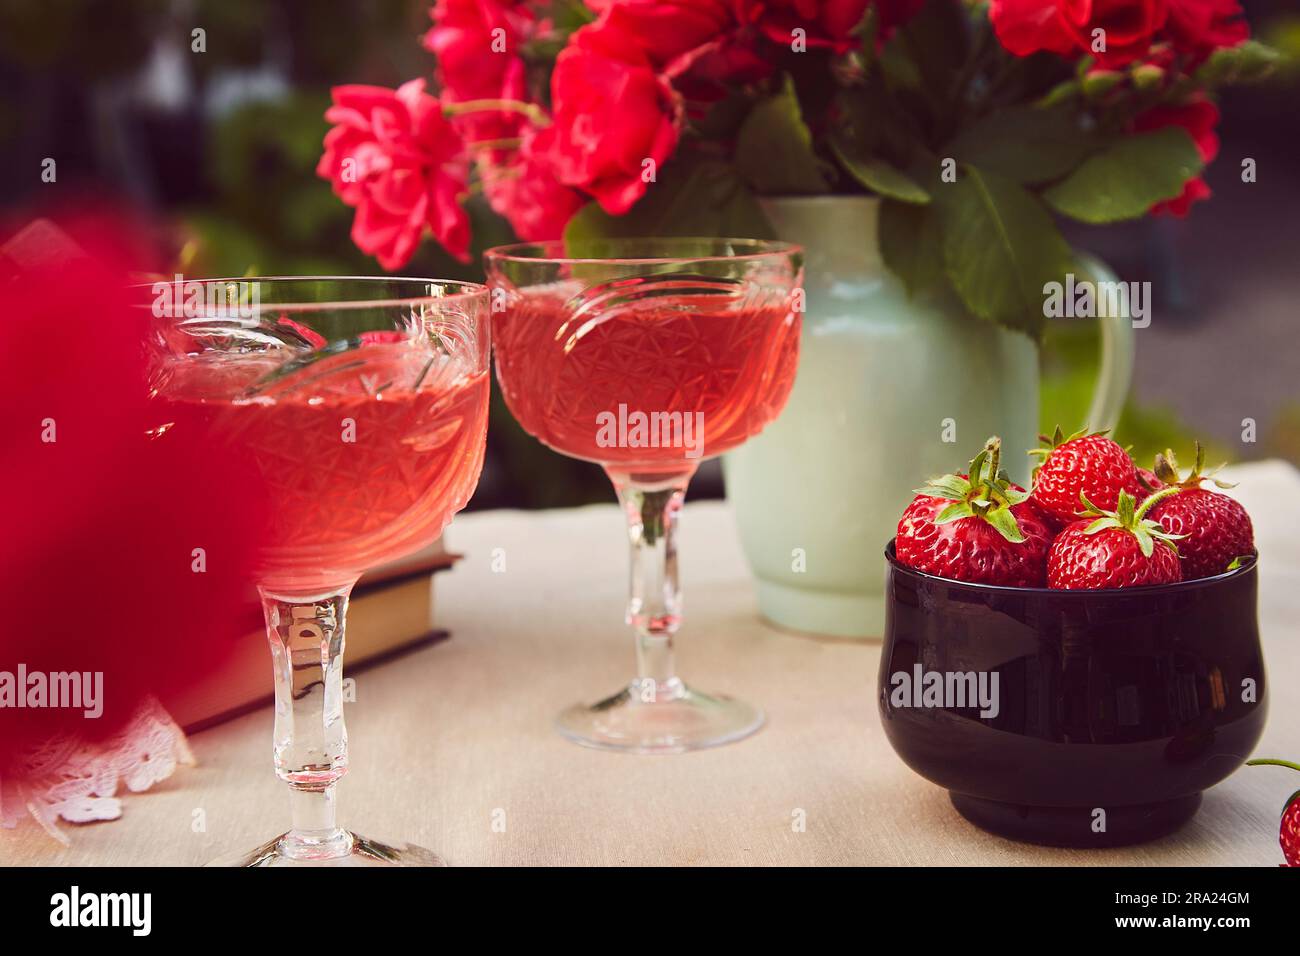 Gemütliche ästhetische Tischgestaltung. Ein paar Gläser mit roter hausgemachter Erdbeer-Infusion, Wein. Rosenstrauß. Stockfoto